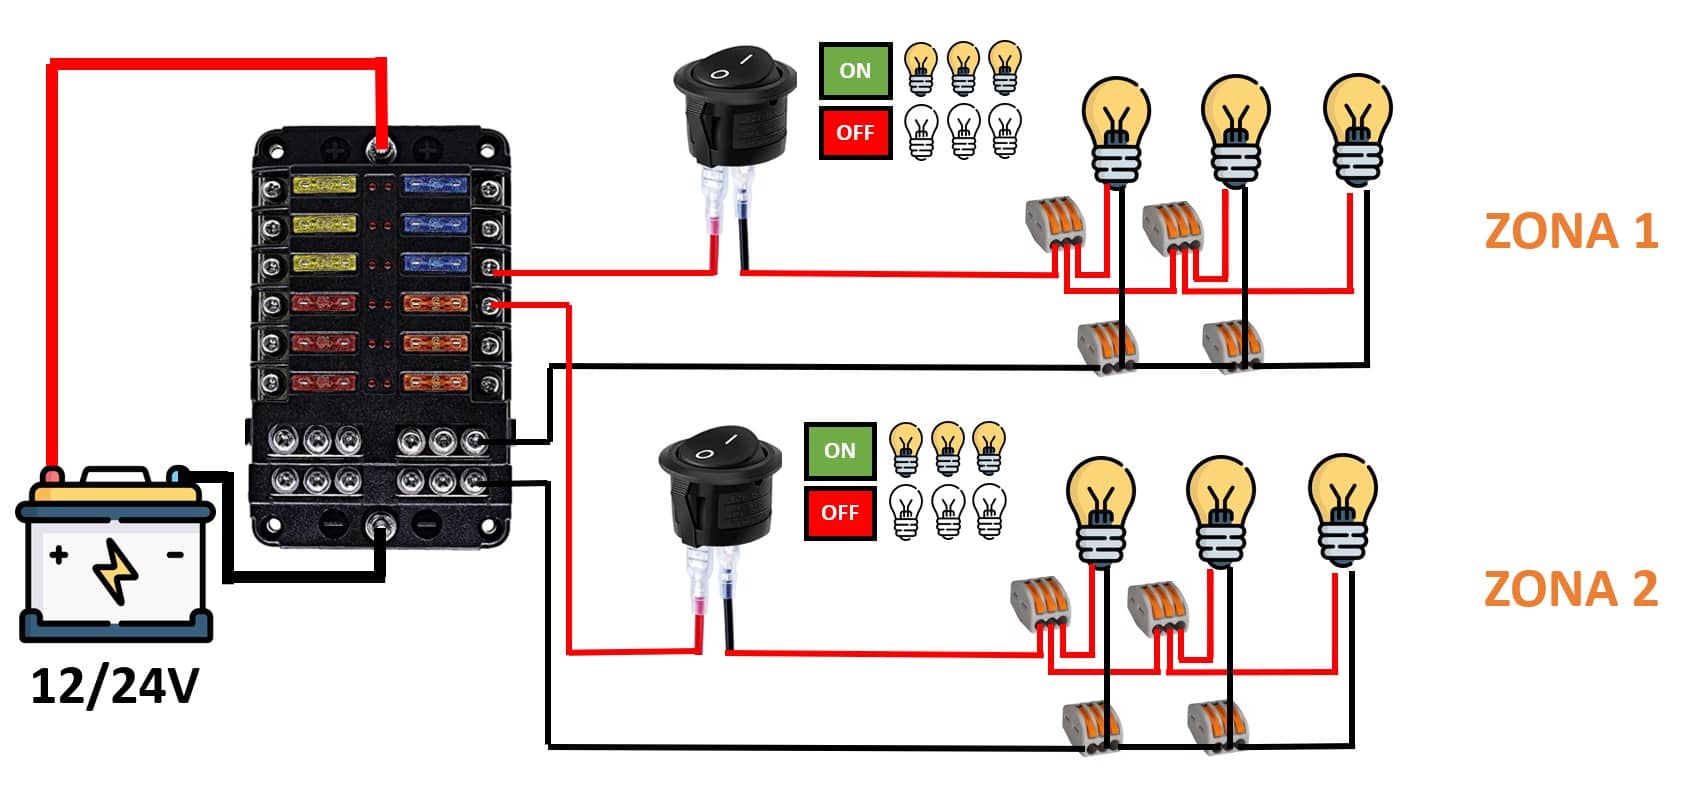 Schema semplificato per collegare più gruppi o zone di luci a 12V alle batterie utilizzando più interruttori